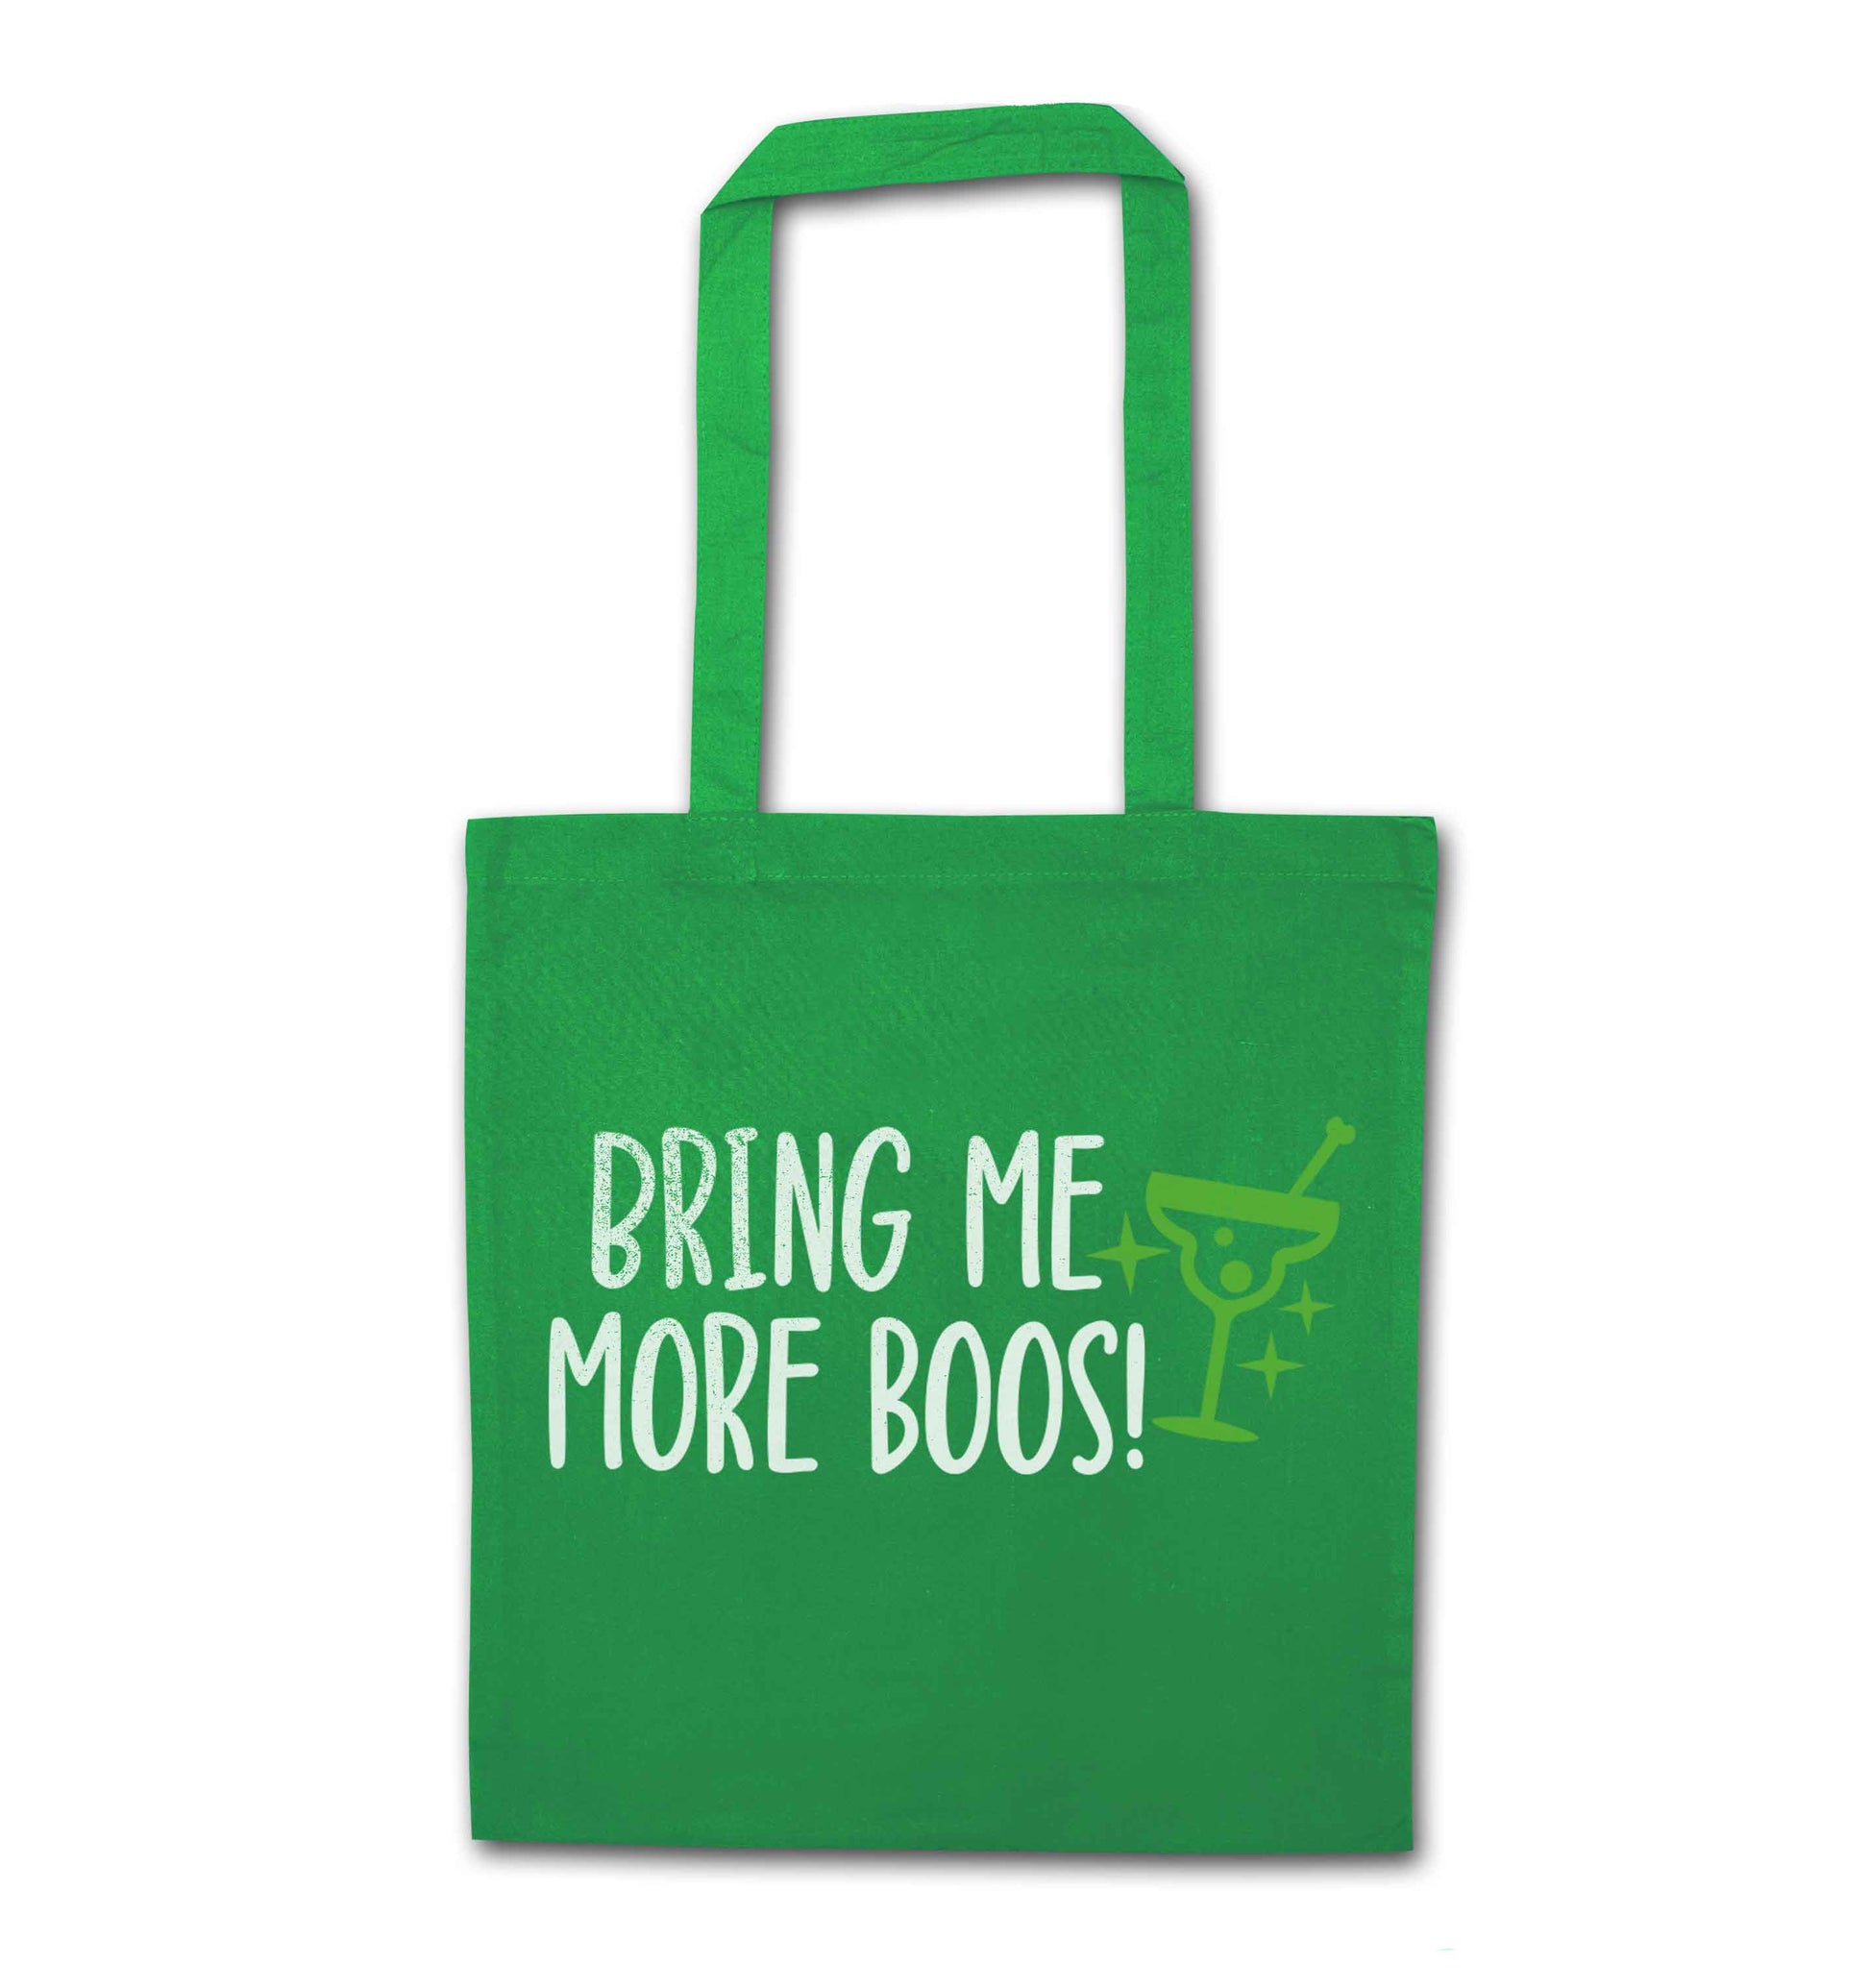 Bring me more boos green tote bag